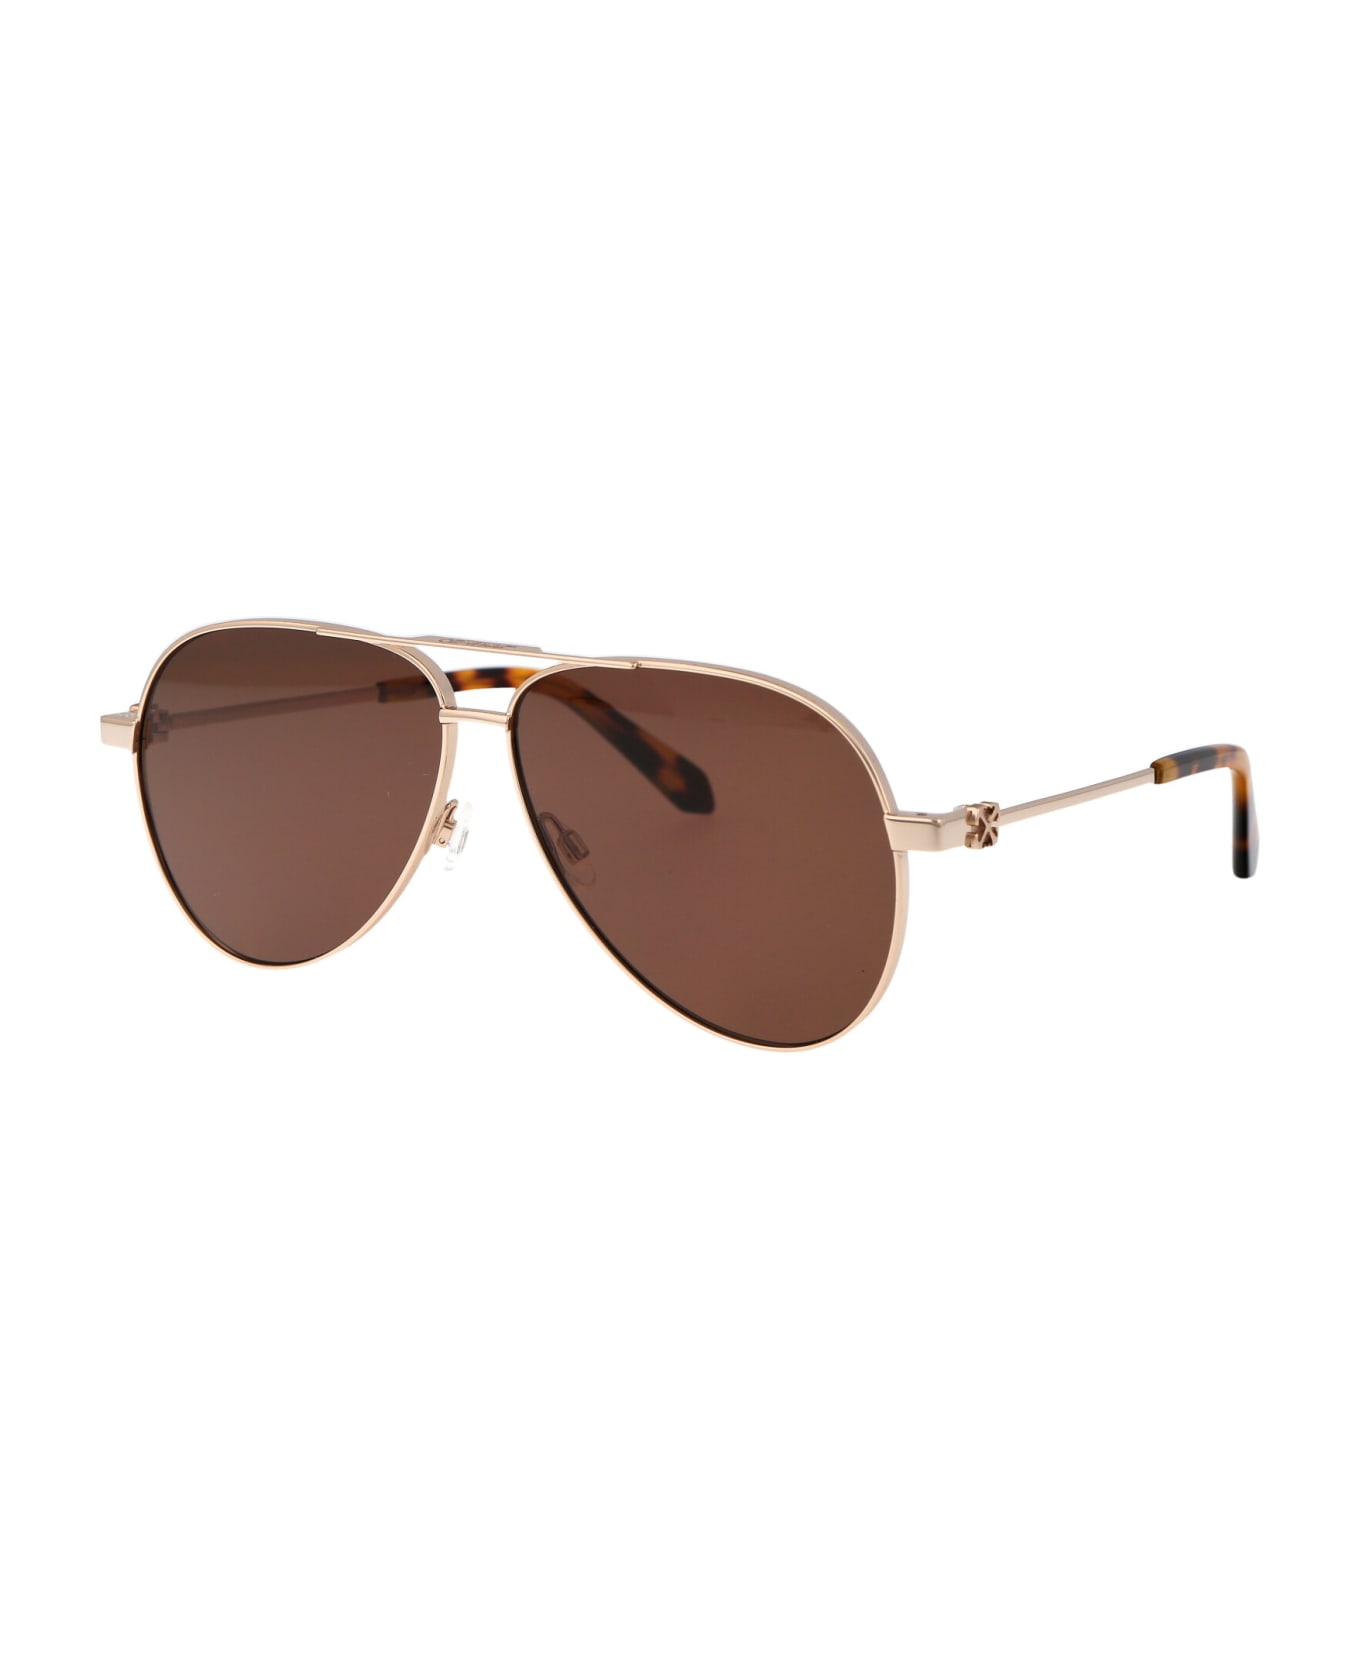 Off-White Ruston L Sunglasses - 7664 GOLD BROWN 